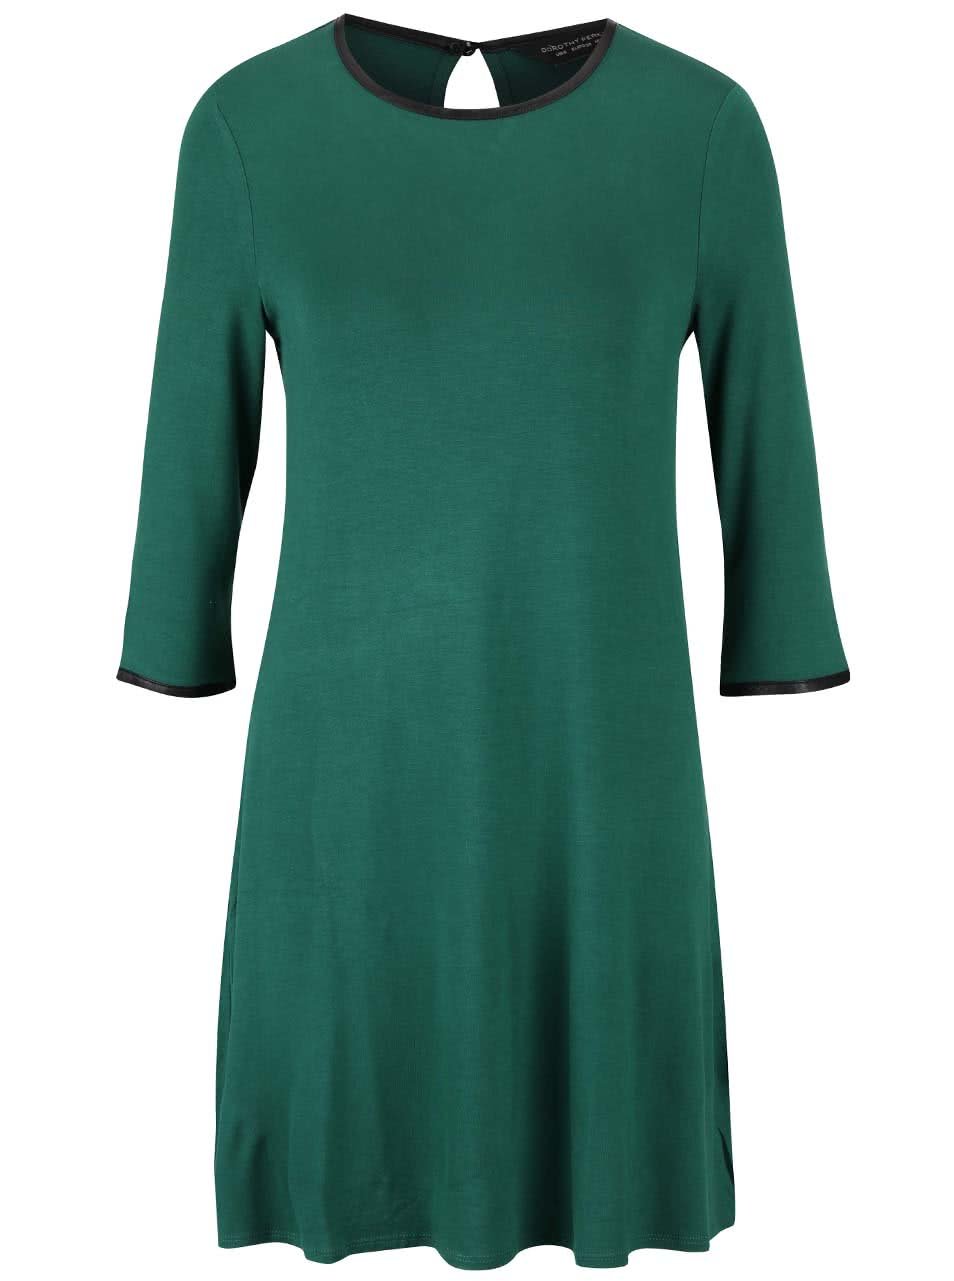 Zelené lehké šaty s tříčtvrtečními rukávy Dorothy Perkins